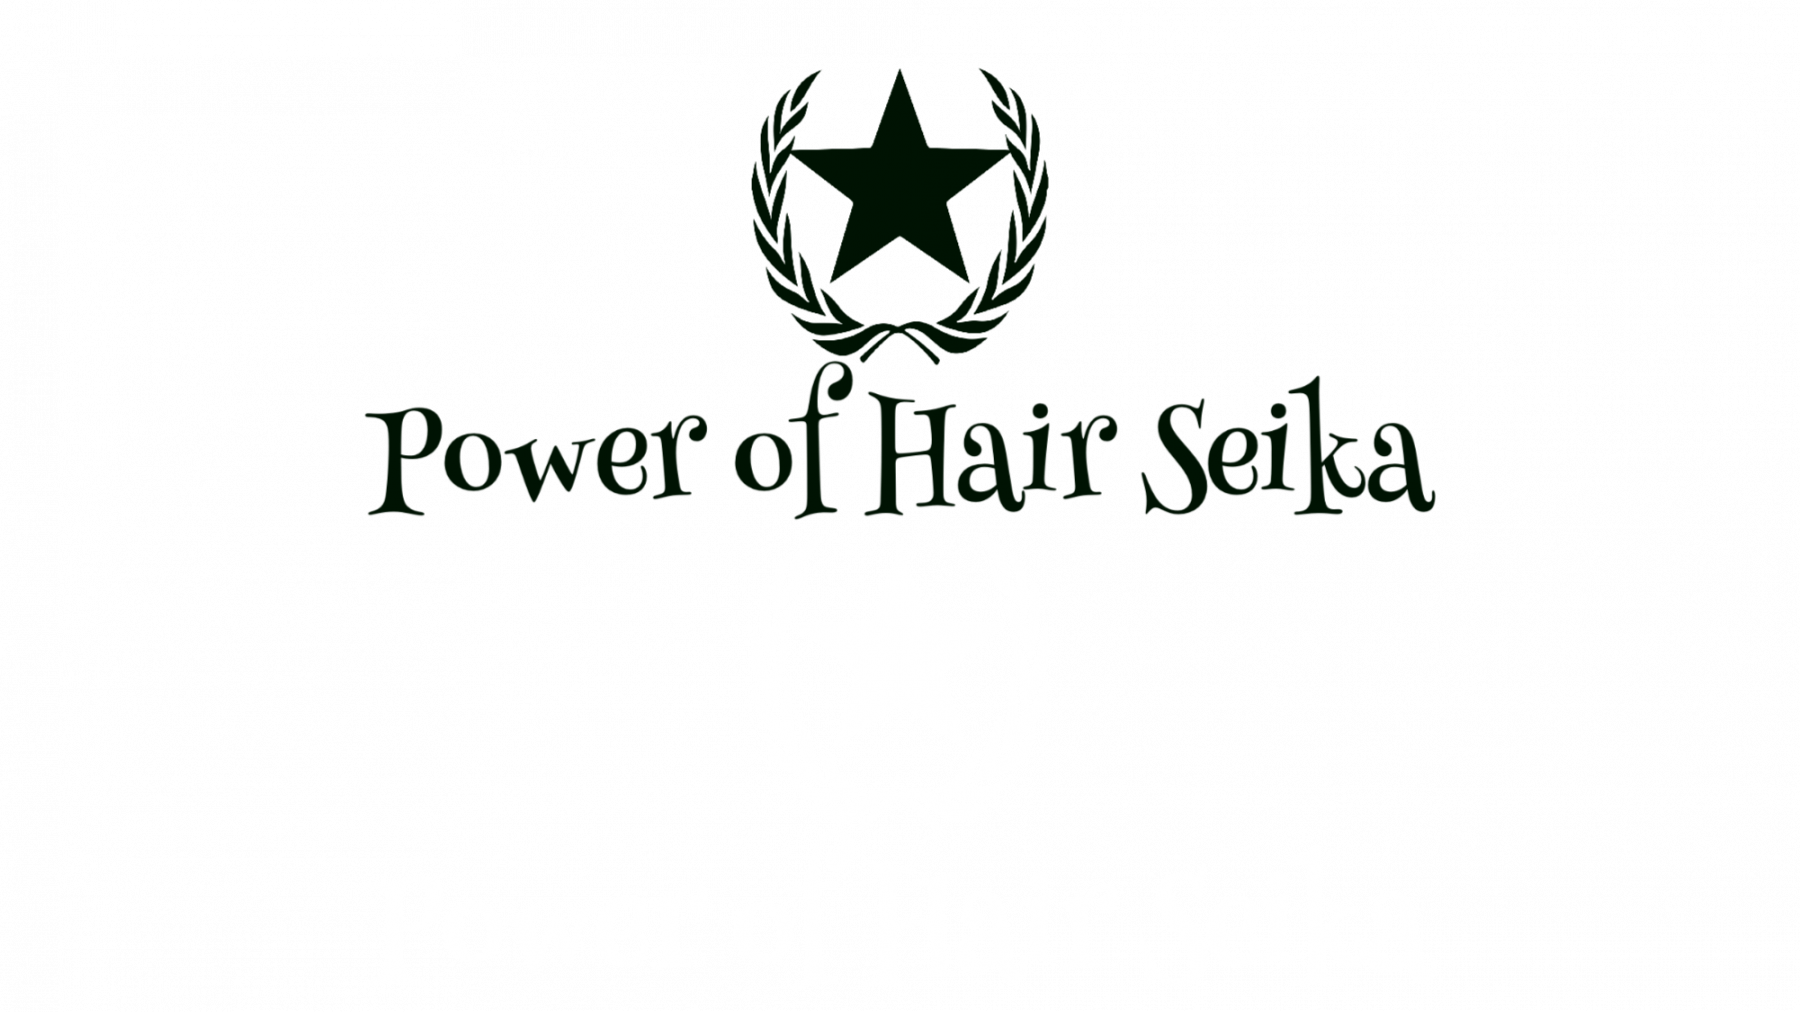 志木 美容院|美容室
Power of Hair Seika（パワーオブヘア セイカ）